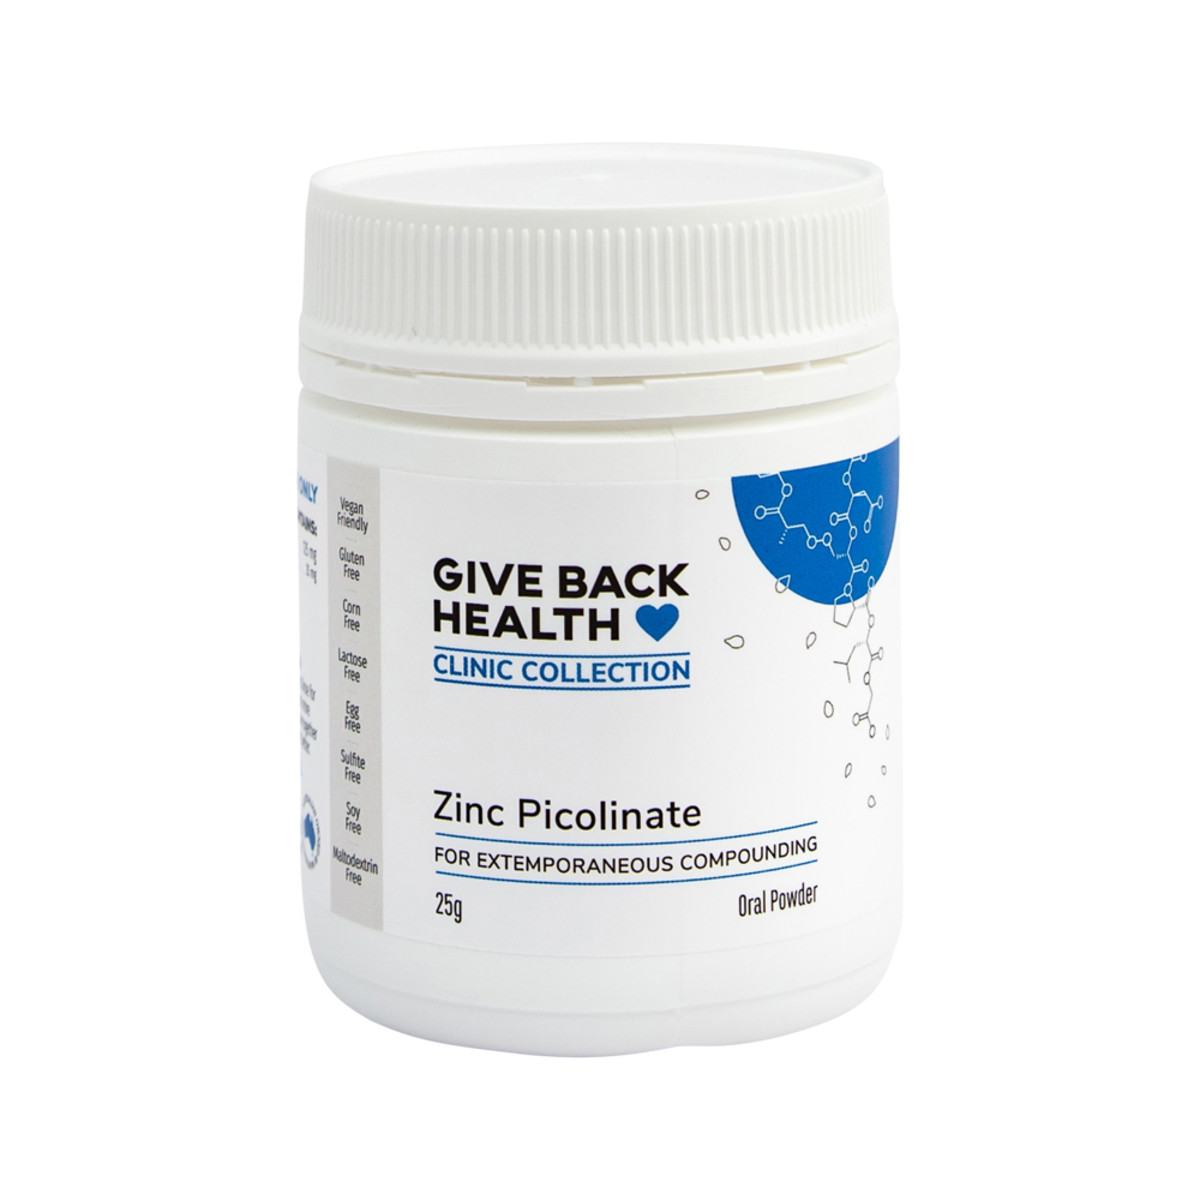 GIVE BACK HEALTH CC - Zinc Picolinate